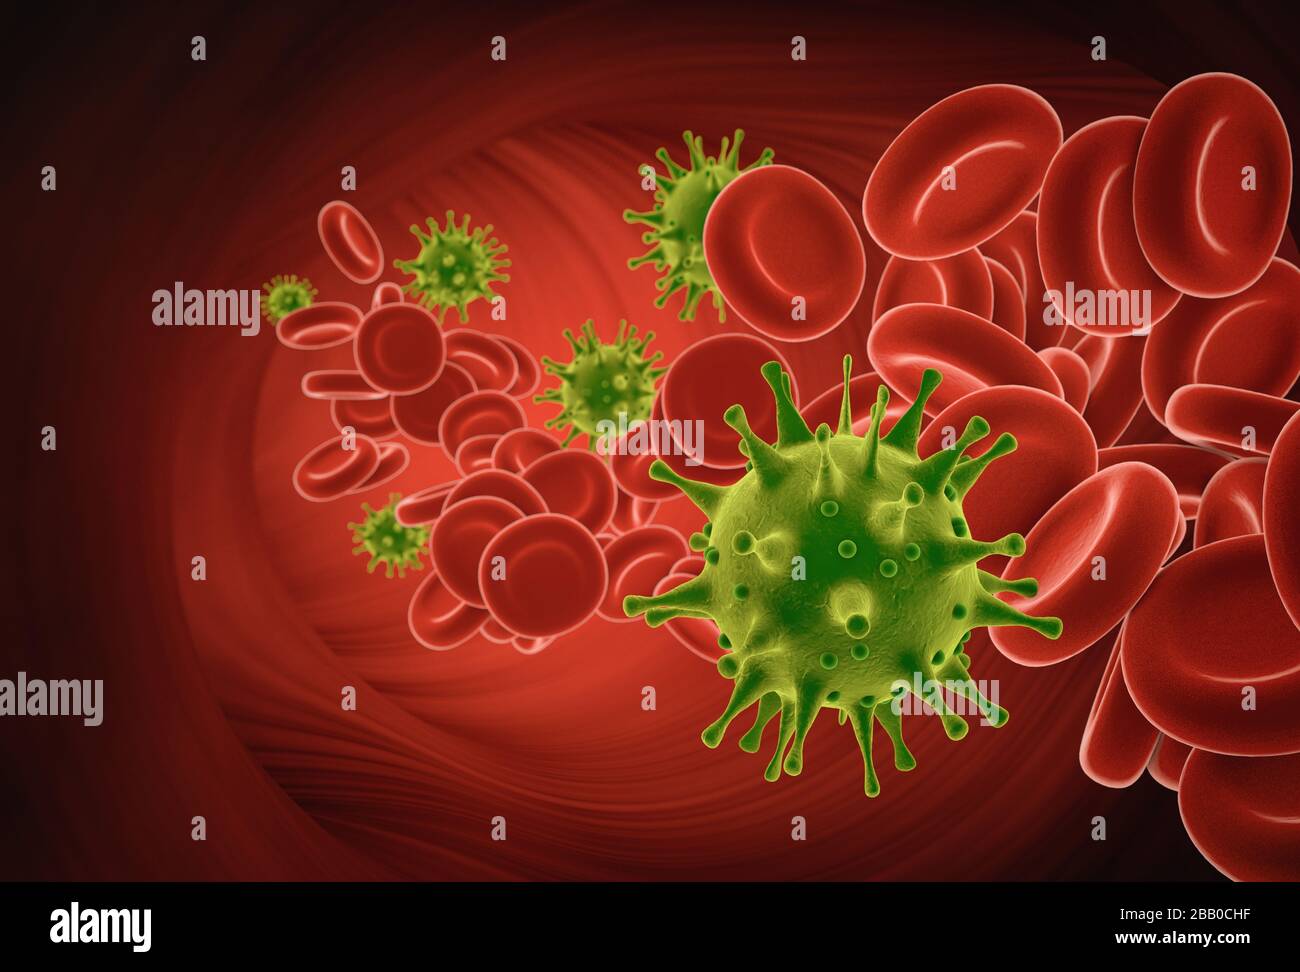 COVID-19-Viren, die sich mit roten Blutkörperchen in der Vene bewegen, als 3D-Rendering. Influenza-Hintergrund des Coronavirus. Pandemic Medical Health Risk Konzept. Stockfoto